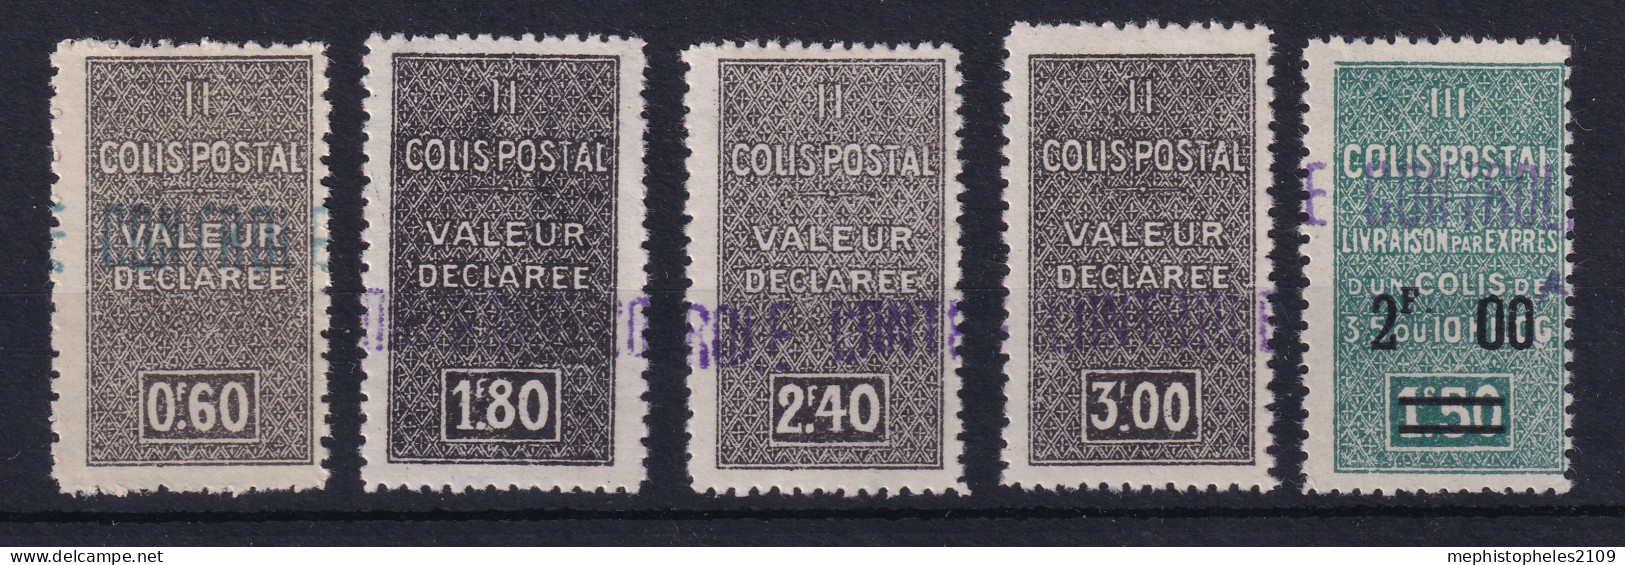 ALGÉRIE 1939 - MLH - YT 55, 56, 57, 58, 59 - COLIS POSTAUX - Parcel Post